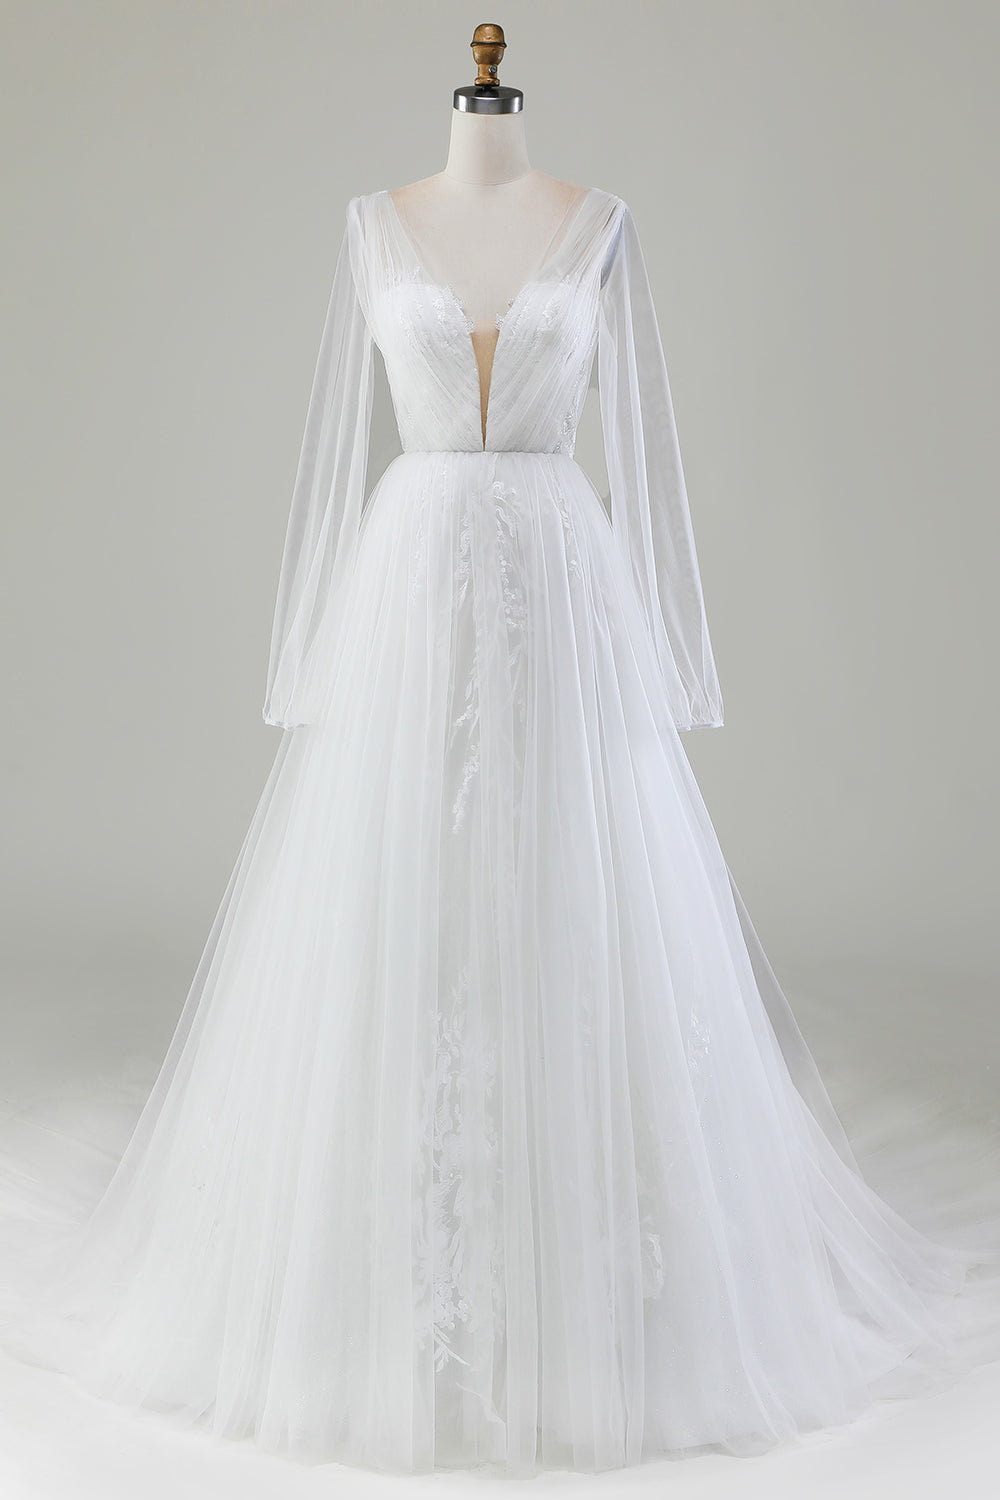 Plisowana tiulowa suknia ślubna w kształcie litery A z dekoltem w szpic i długimi rękawami